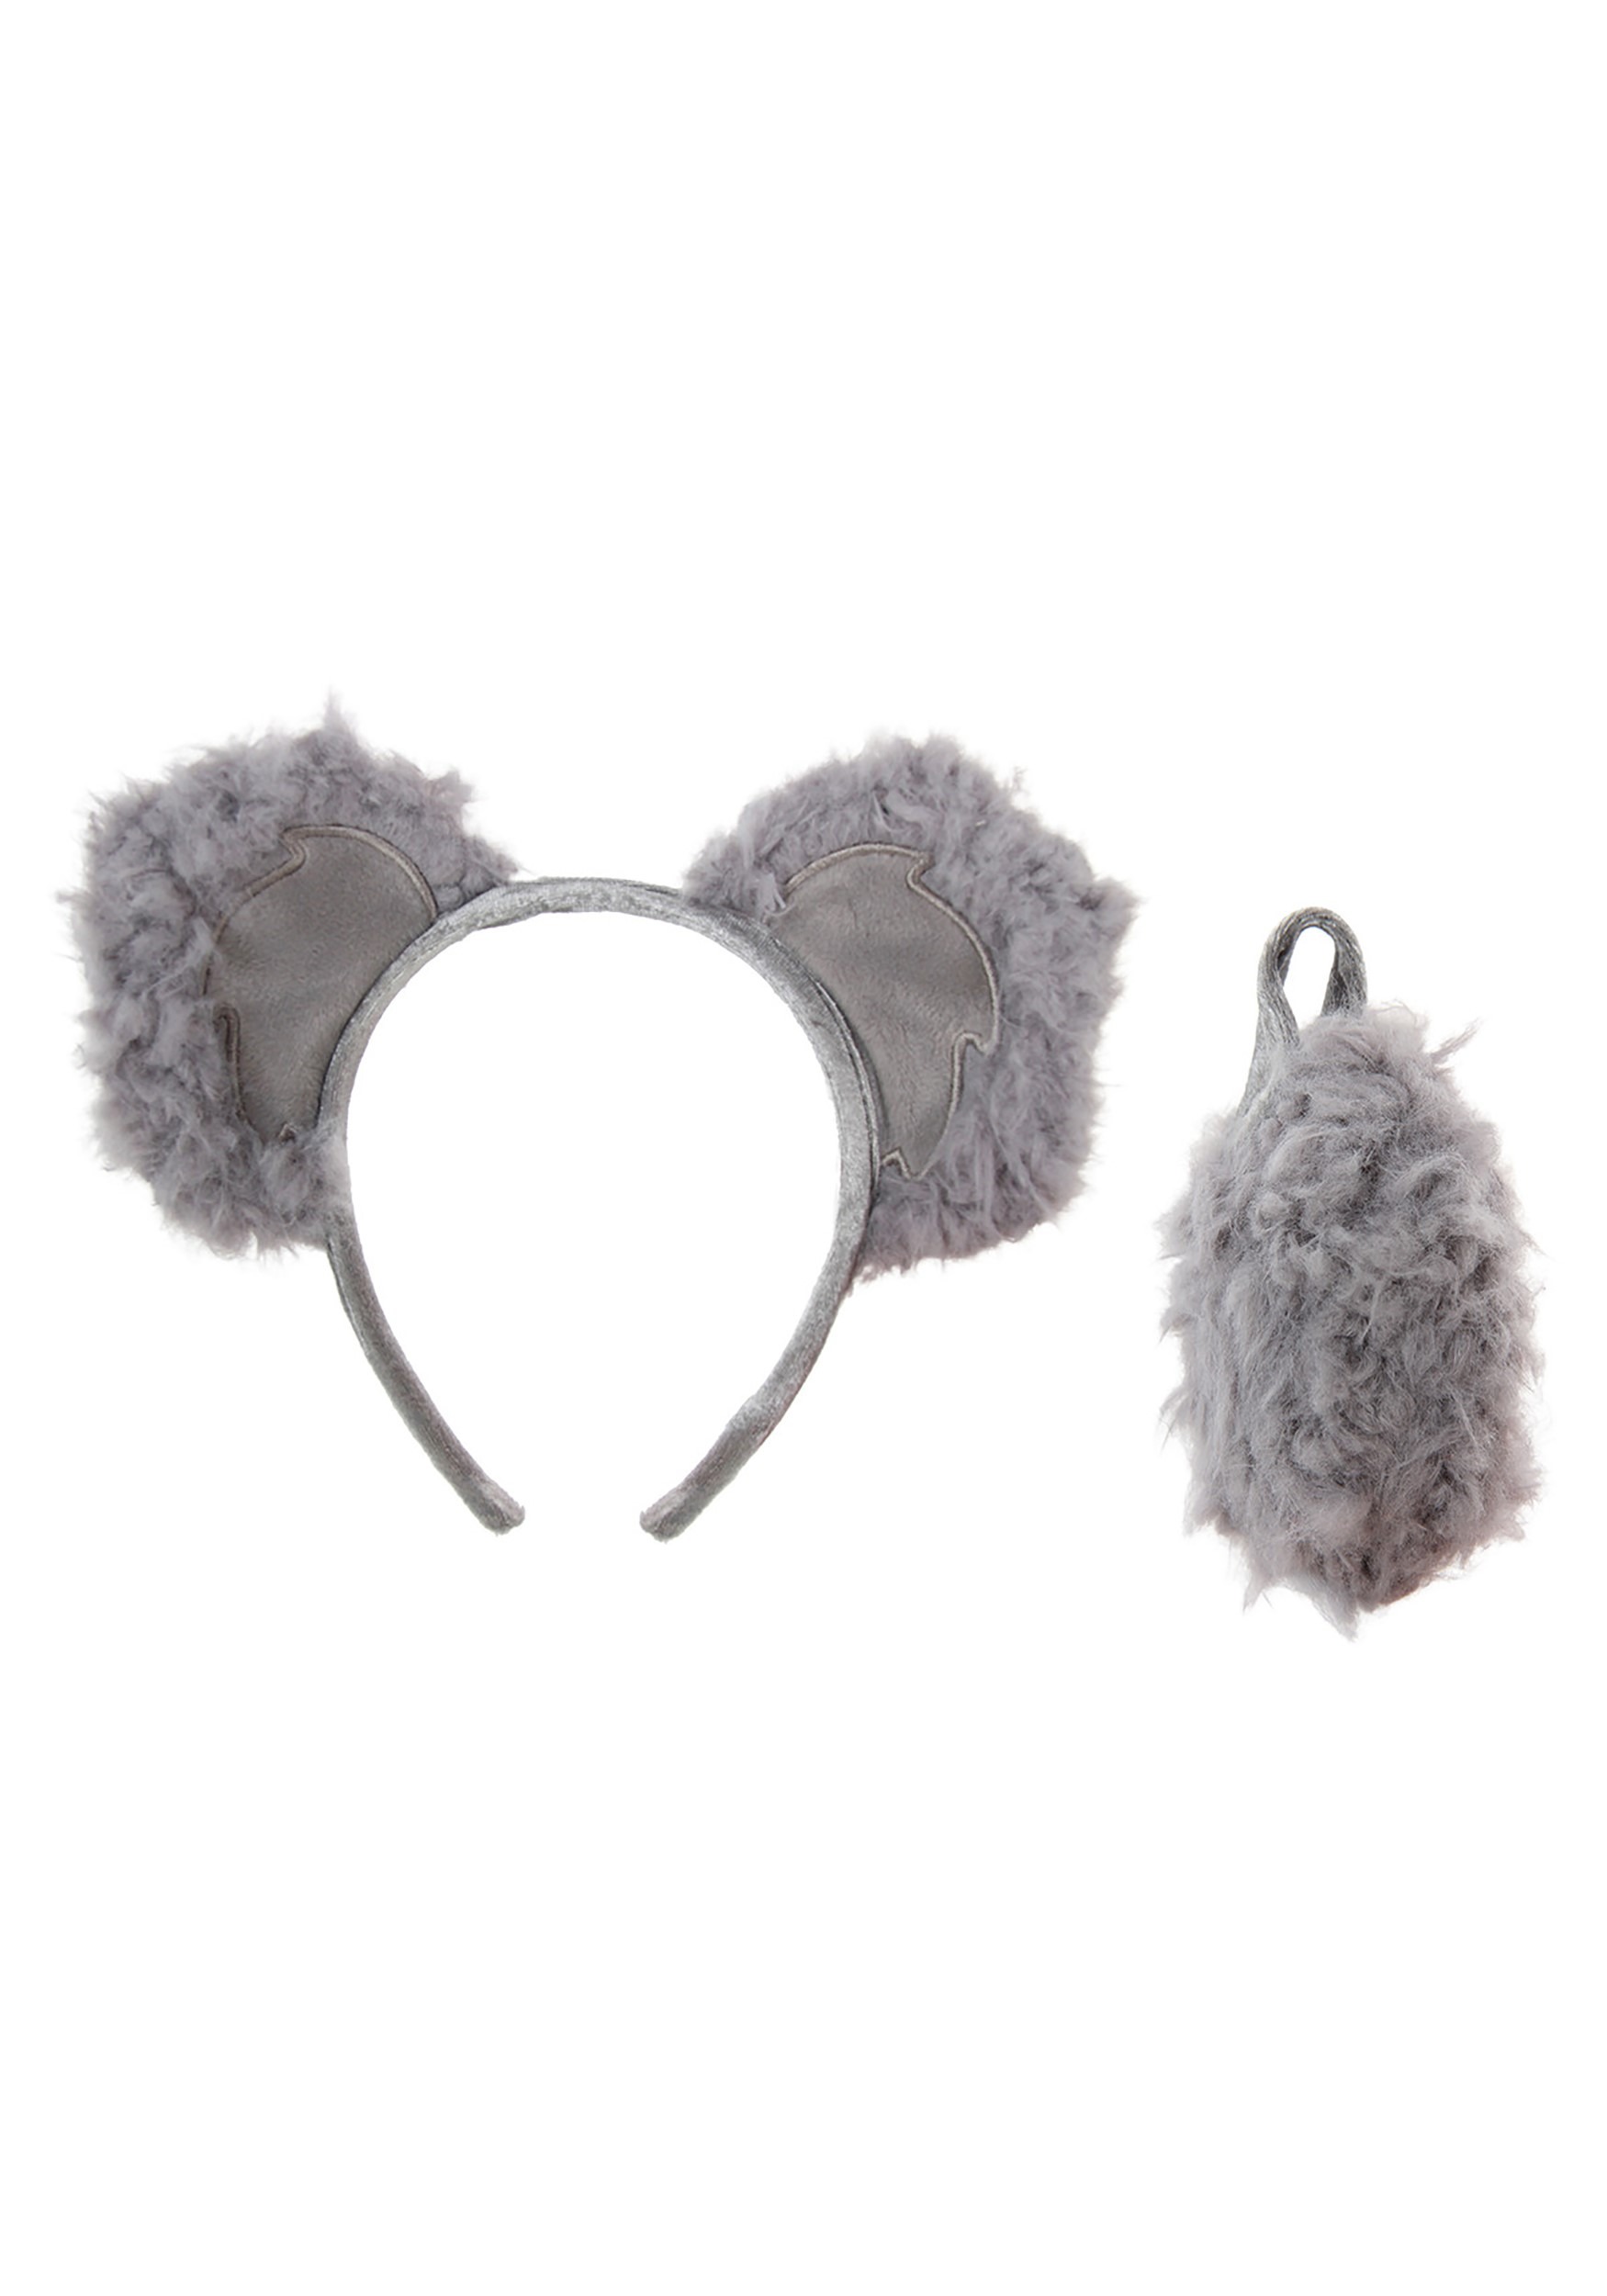 NEW Koala Headband With Ears Imaginative Play Dress Ups 